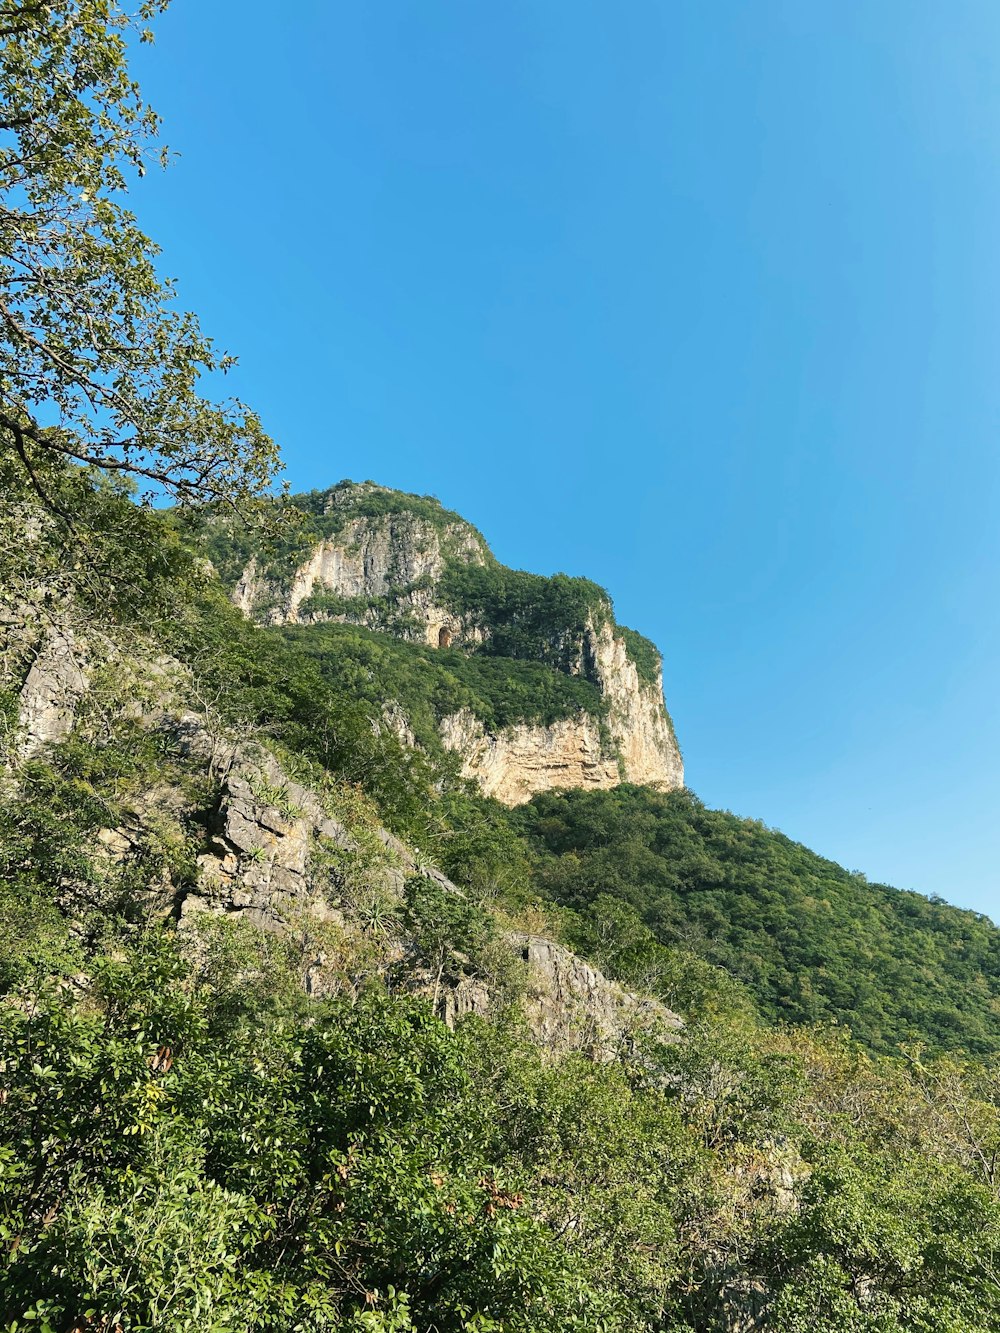 arbres verts sur la montagne rocheuse sous le ciel bleu pendant la journée